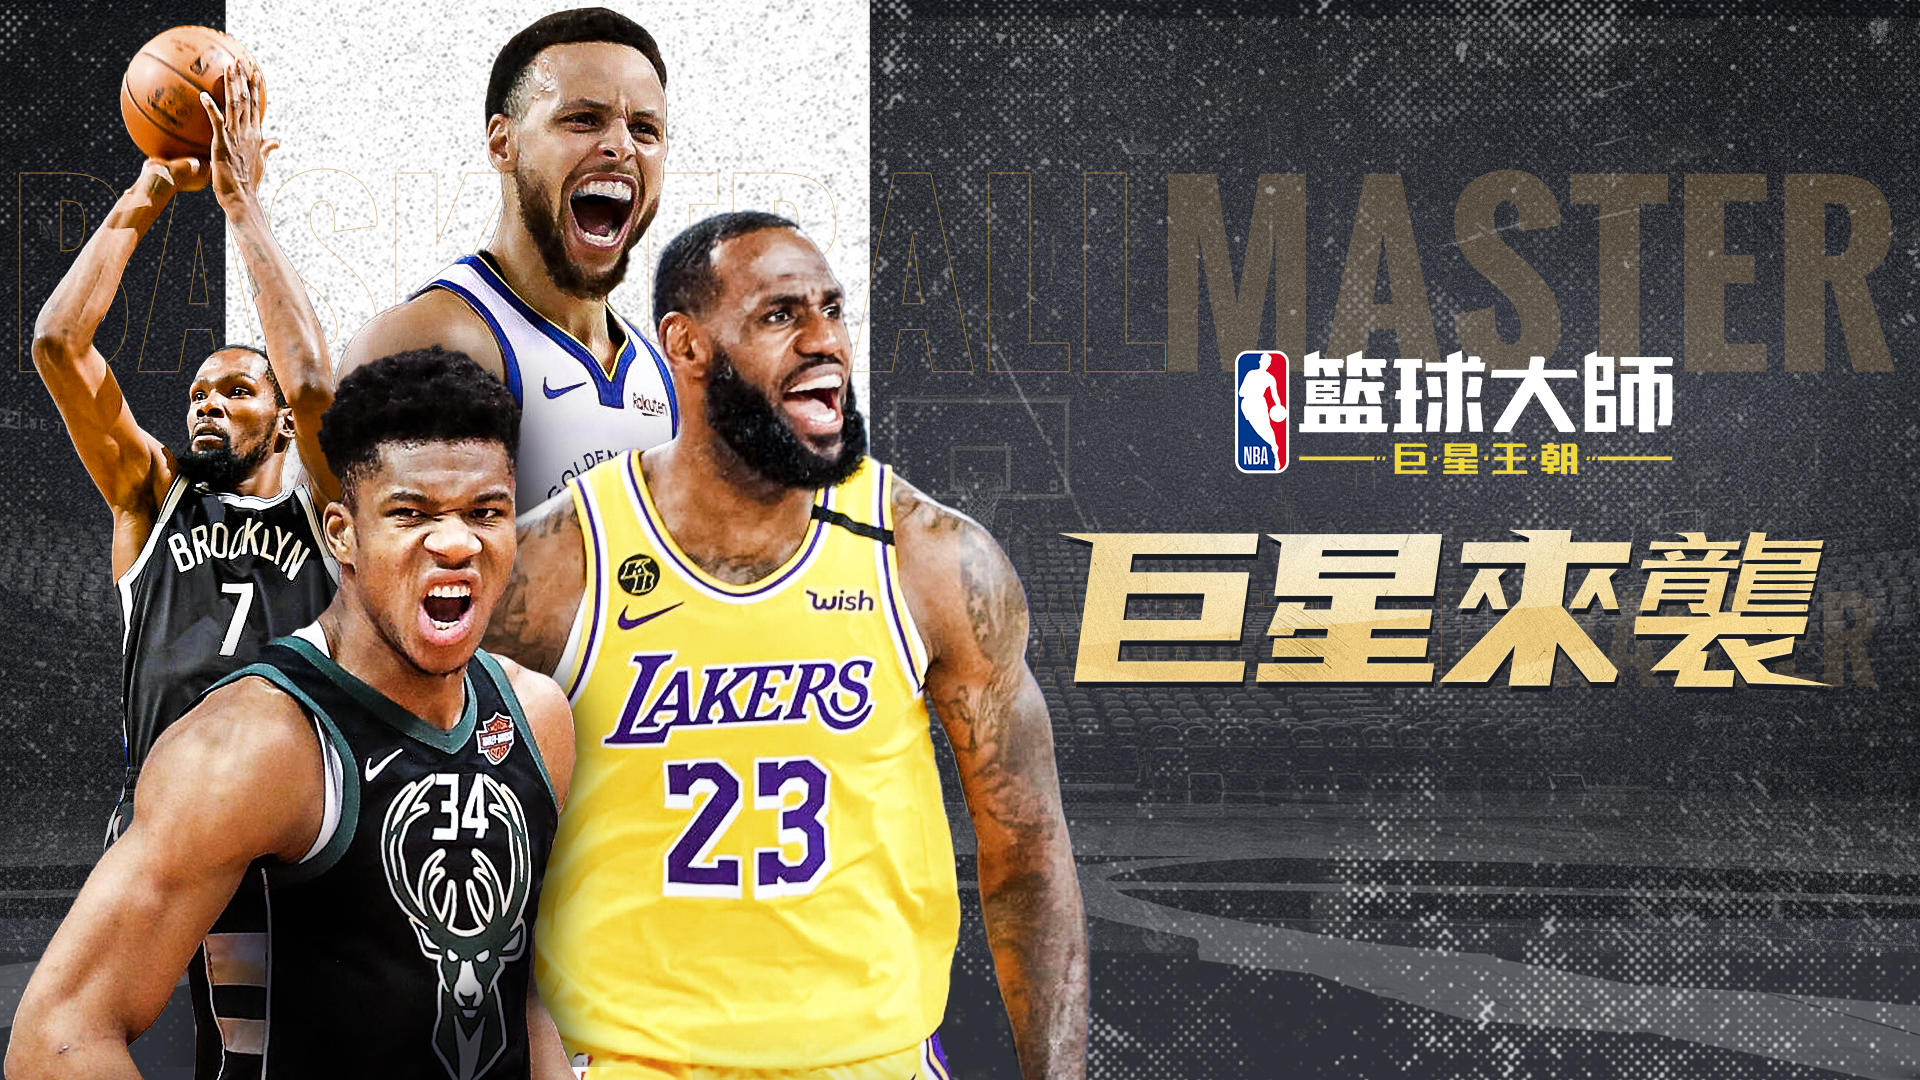 Banner of Maestros del baloncesto de la NBA 